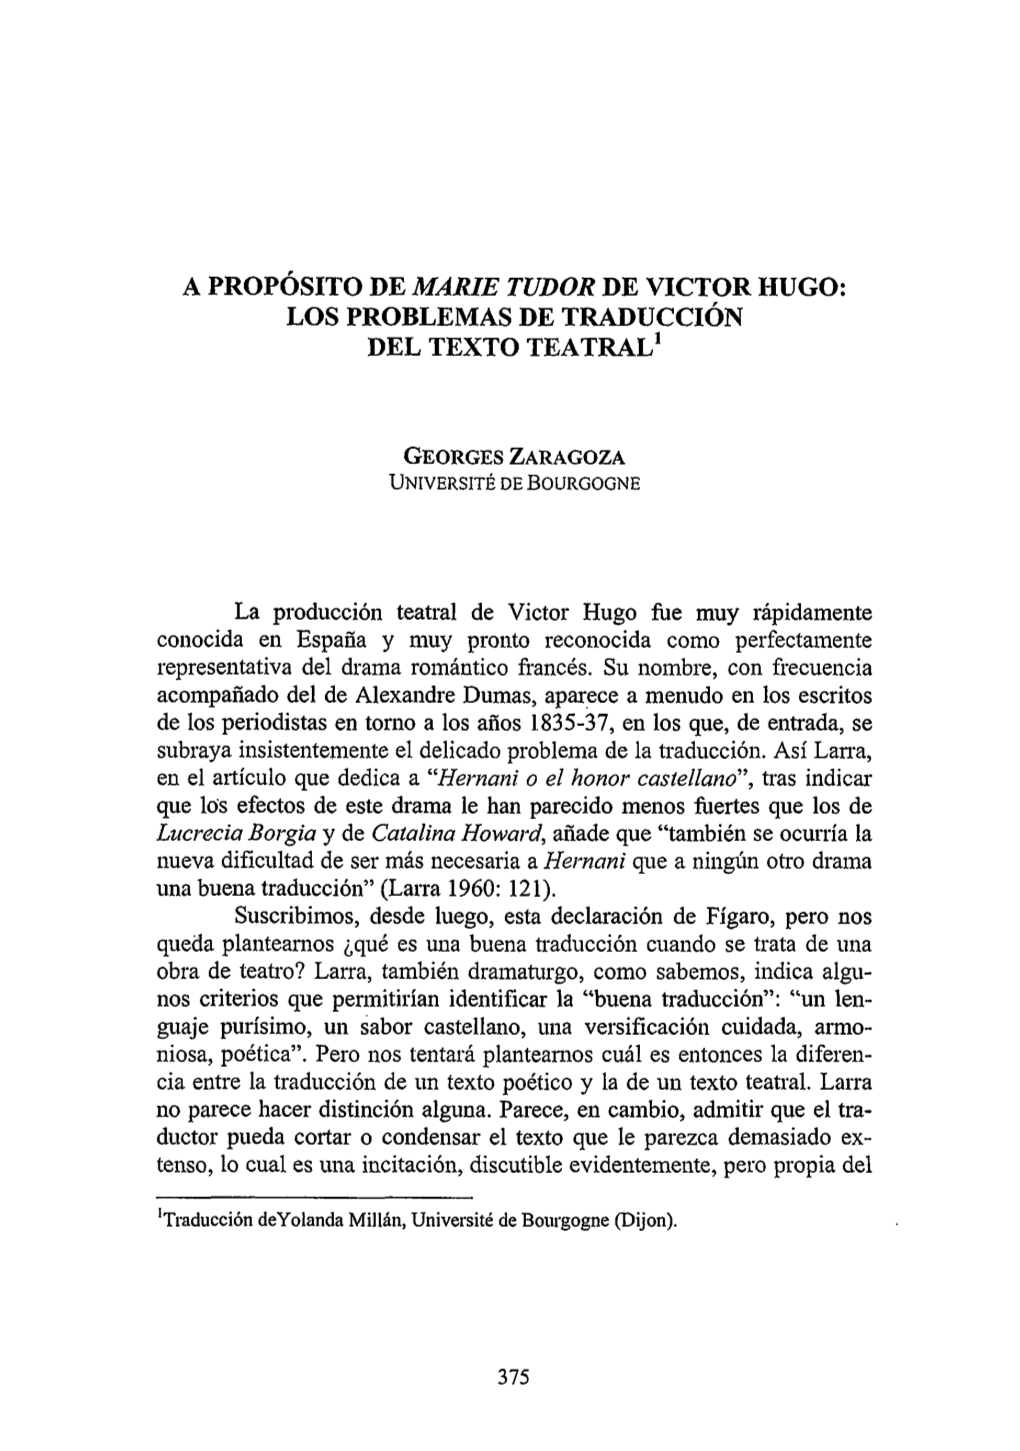 A Propósito De "Marie Tudor" De Víctor Hugo: Los Problemas De Traducción